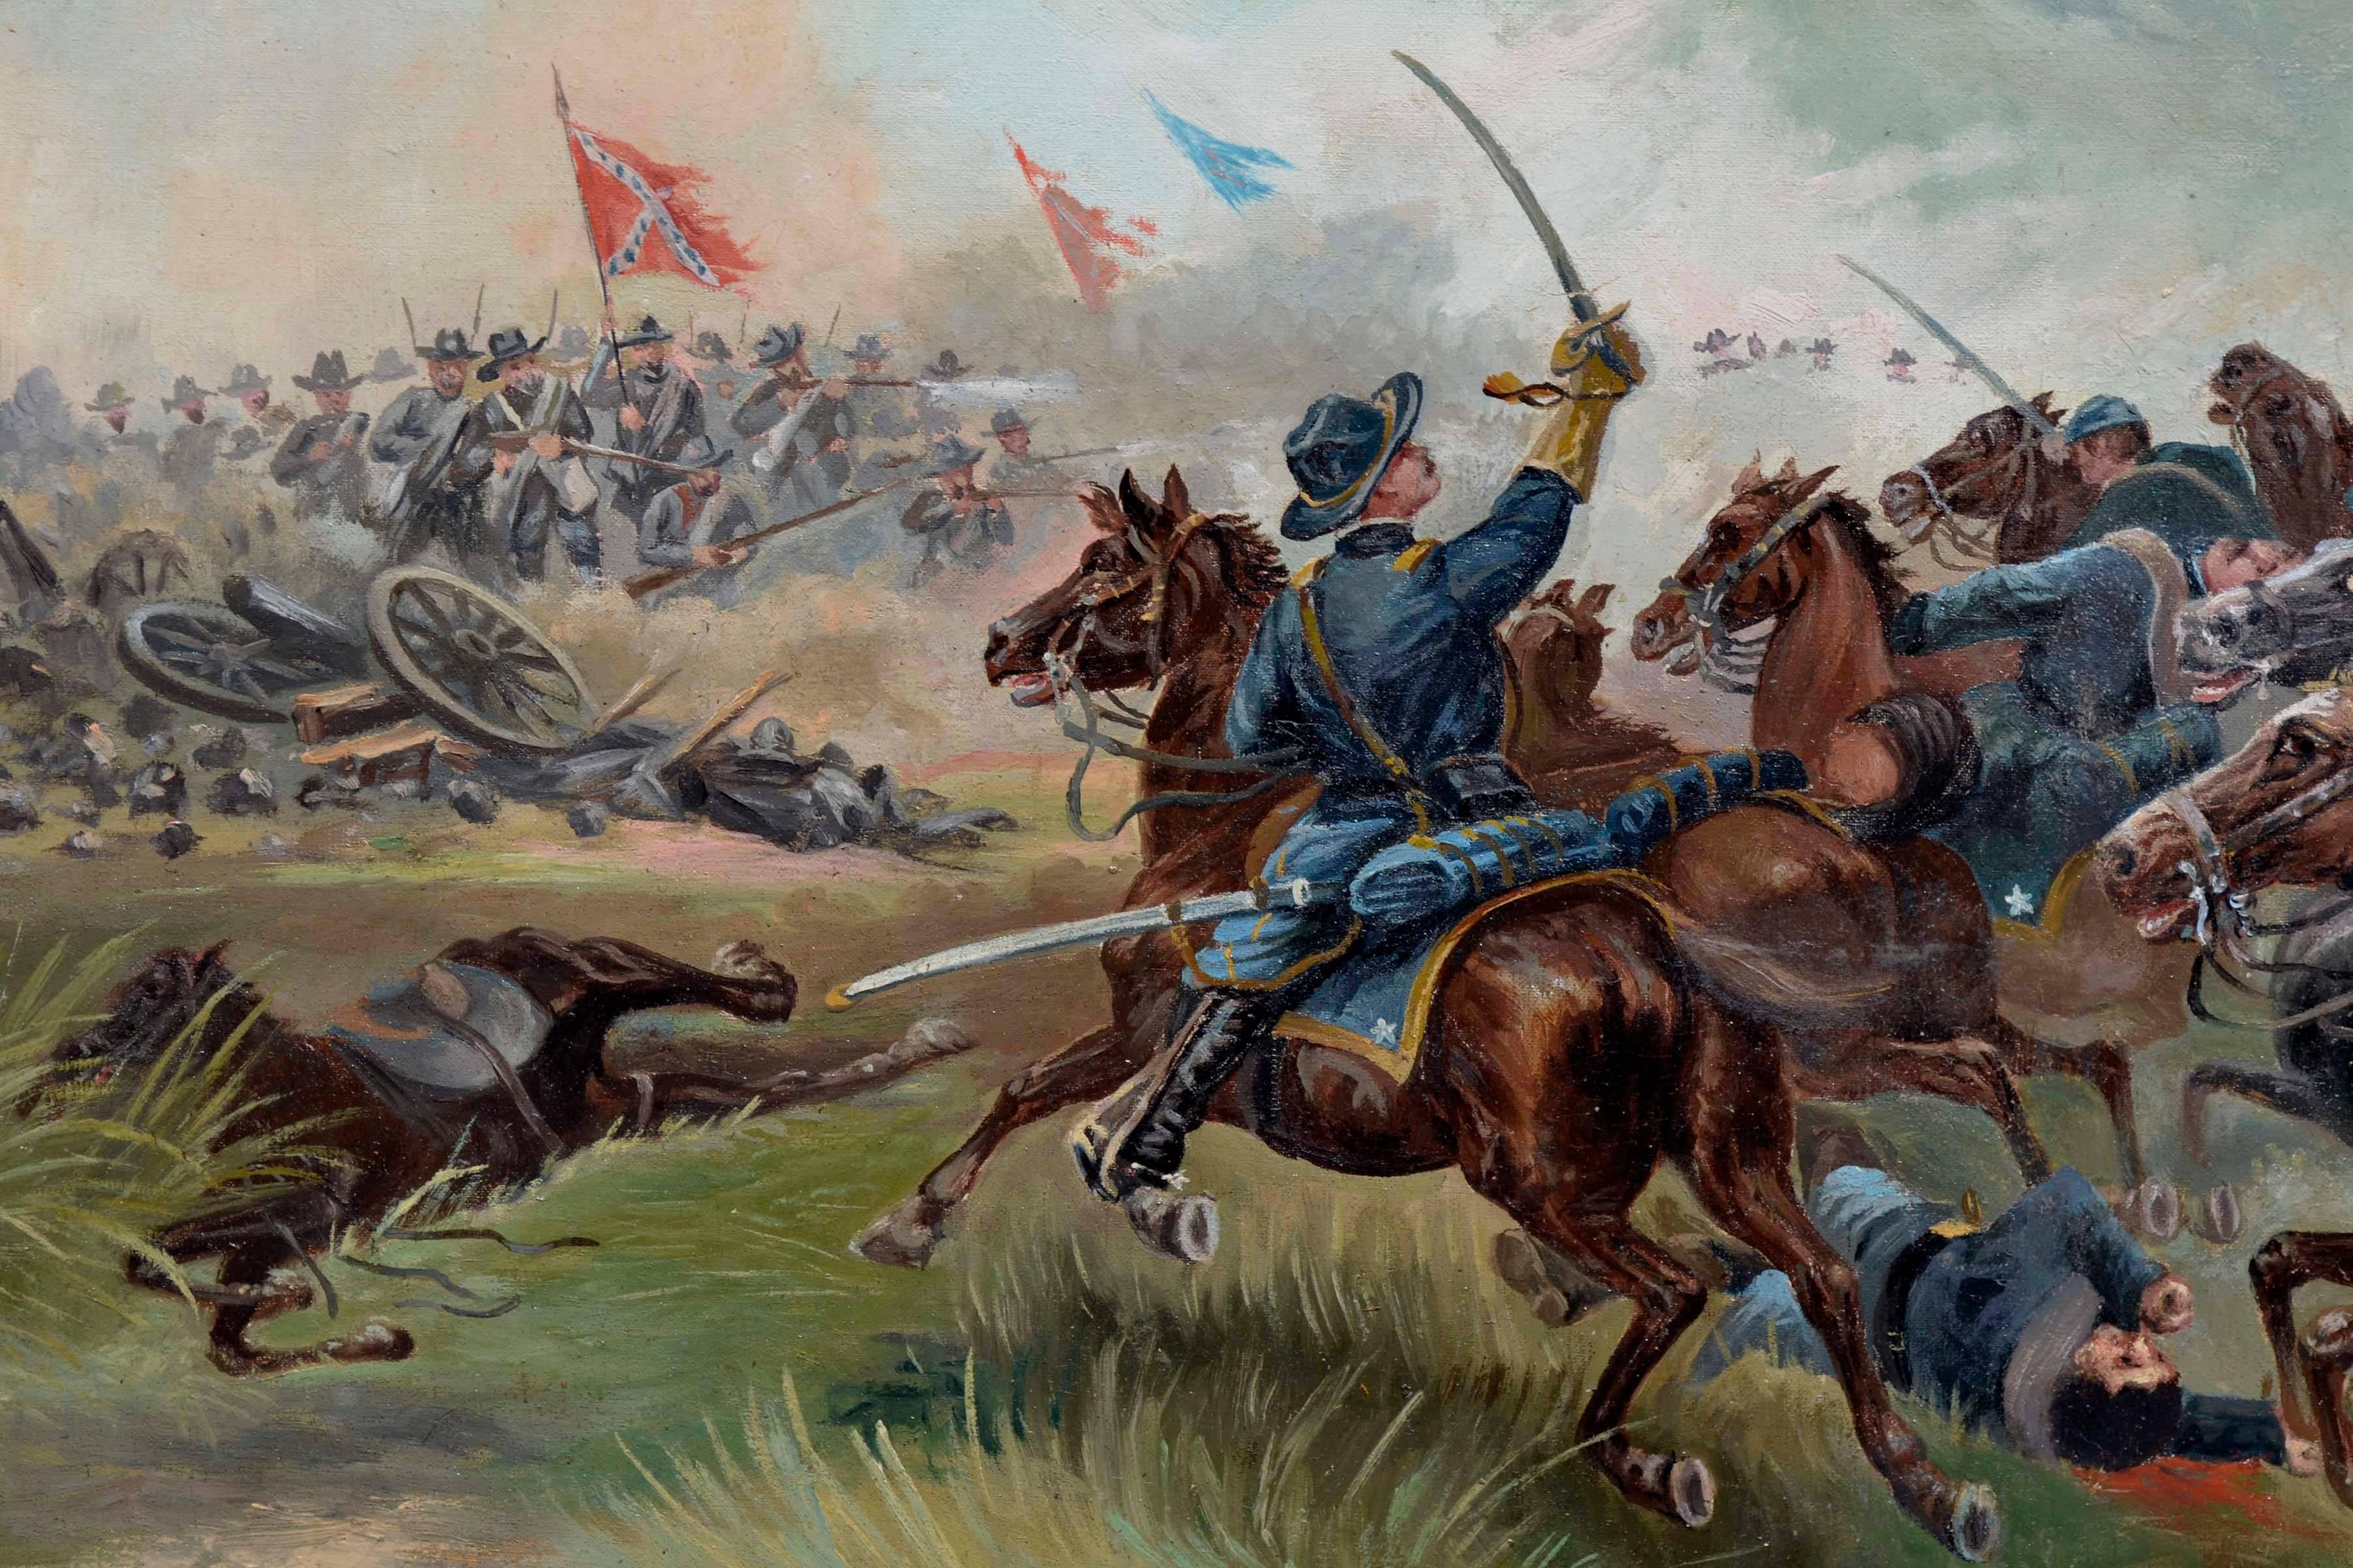 Figürliches Gemälde aus dem späten 19. Jahrhundert, das die Schlacht von Trevilians Station und die Verwundung von Oberst Sackett am 11. Juni 1864 zeigt. Öl auf Leinwand in einem Rahmen aus vergoldetem Holz. Rechts unten undeutlich signiert oder